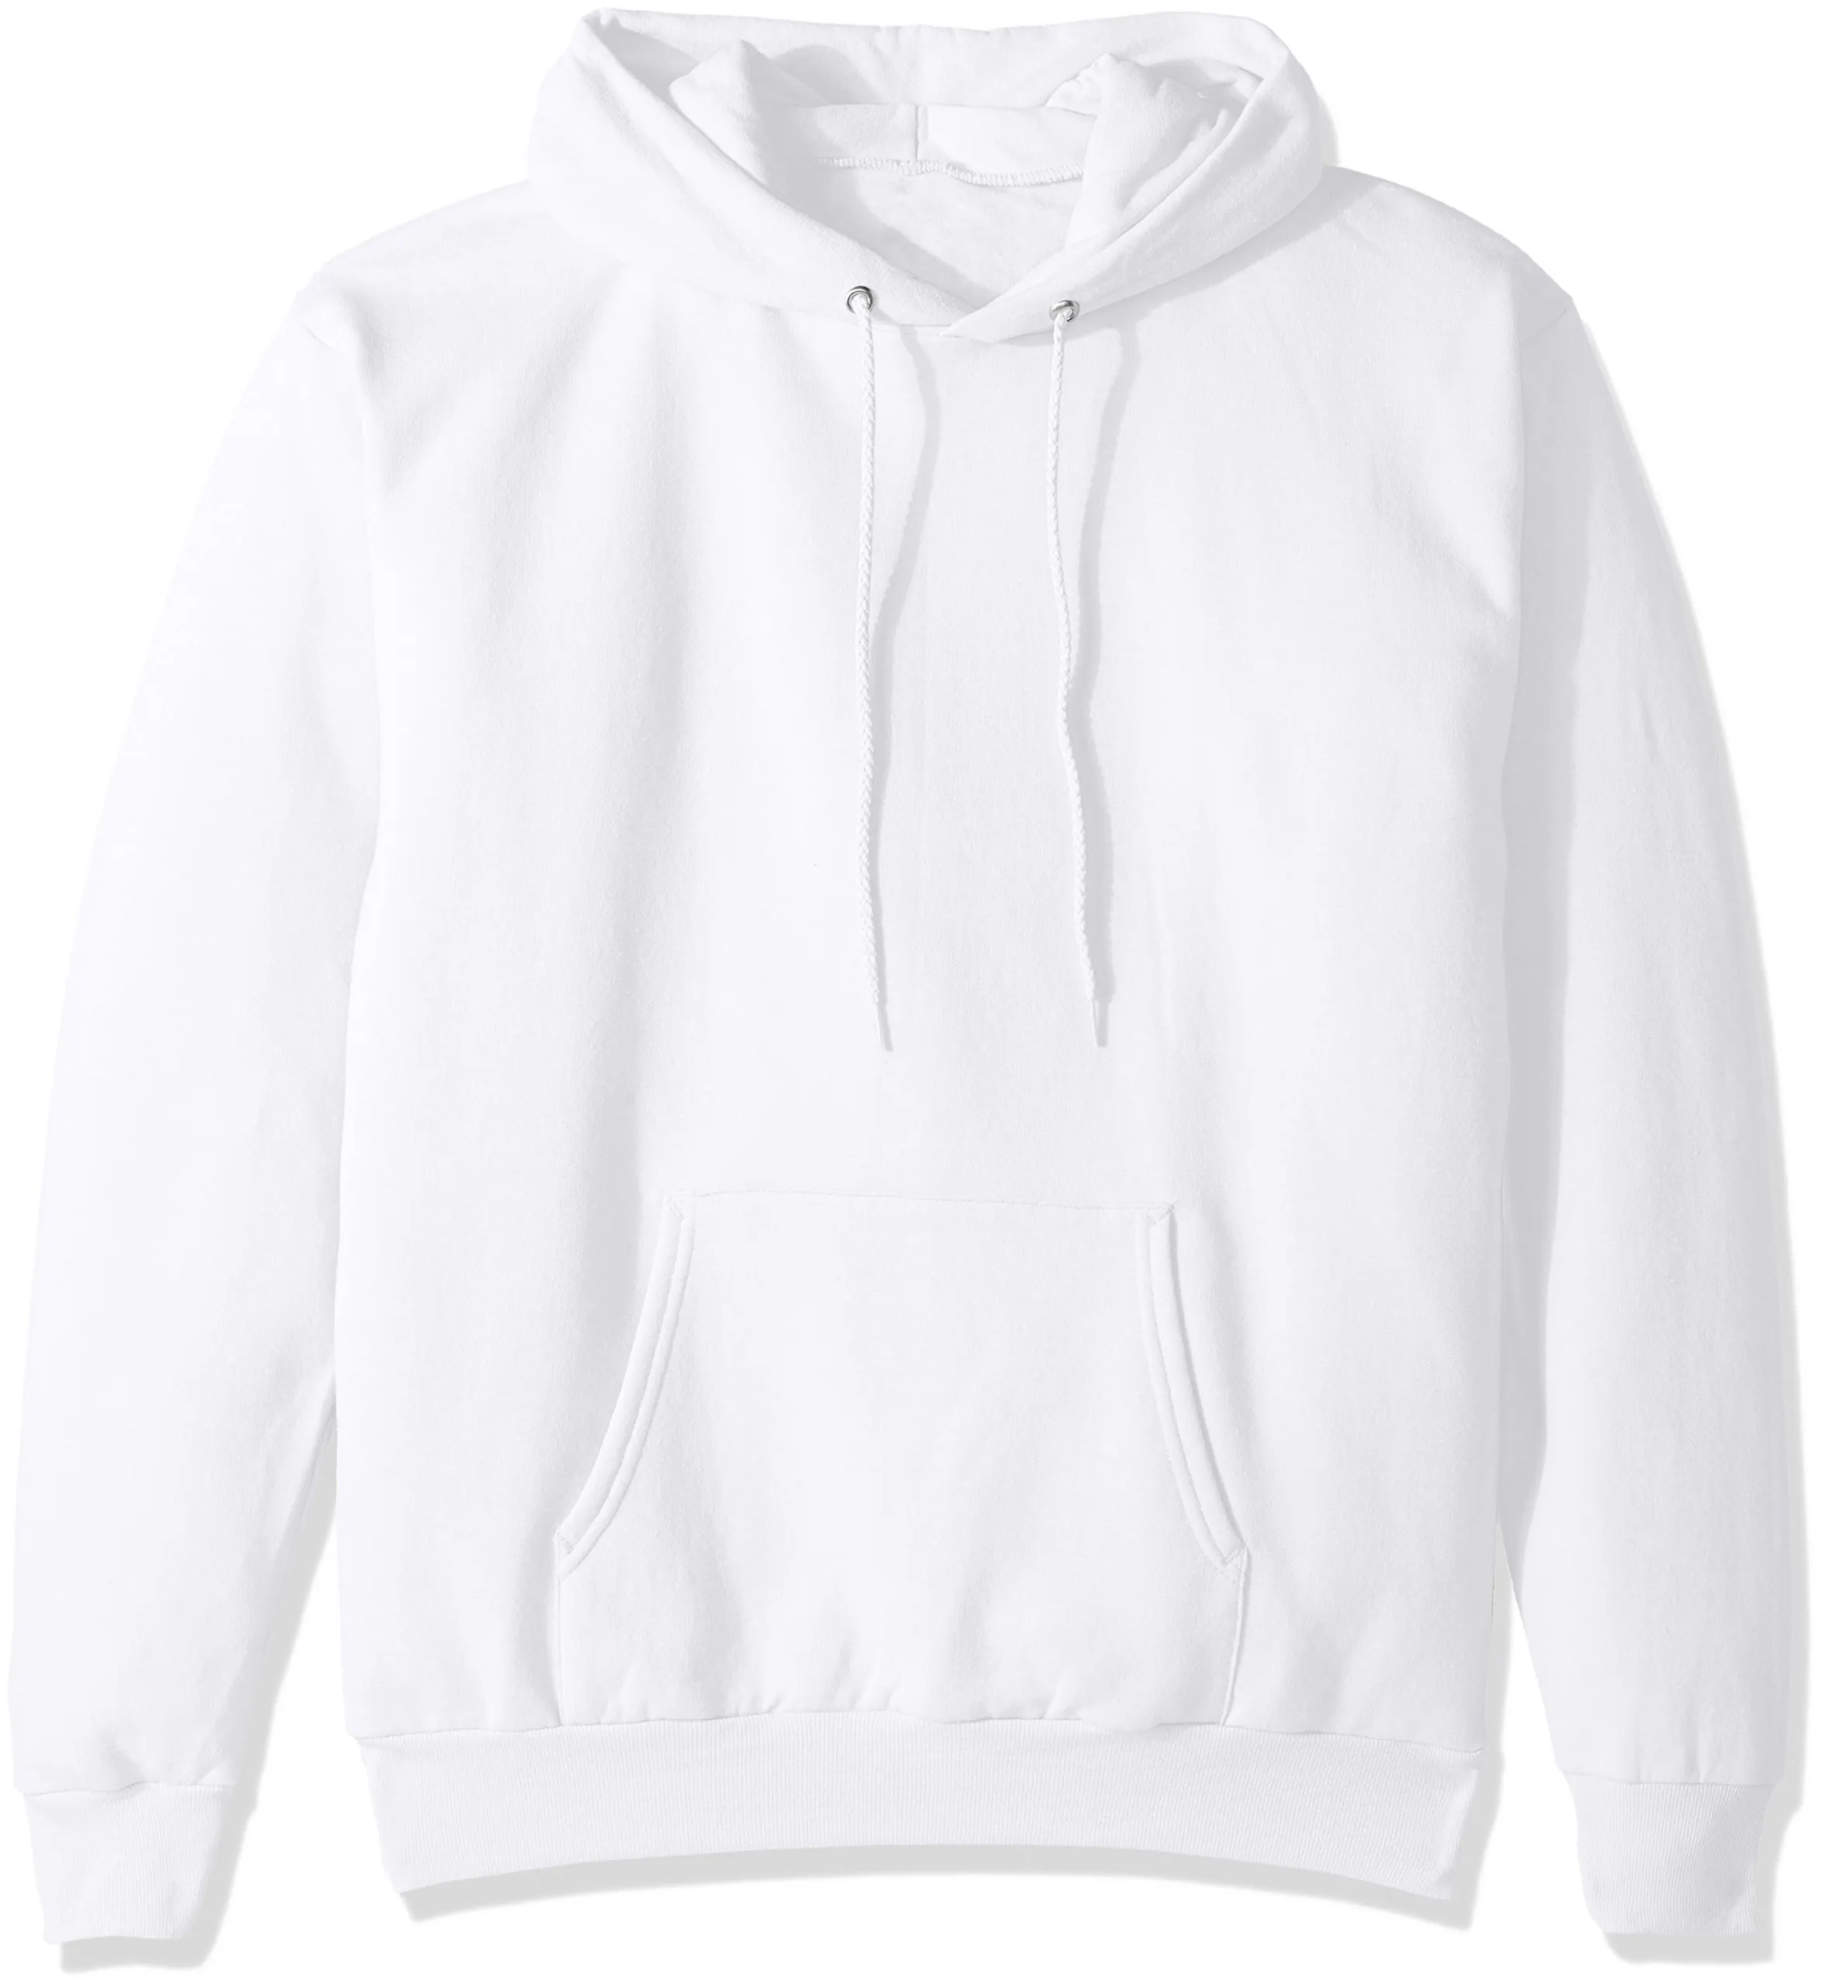 OEM mens सफेद हूडि 100% कपास लंबी आस्तीन कस्टम mens सादे स्वेटर hoodies